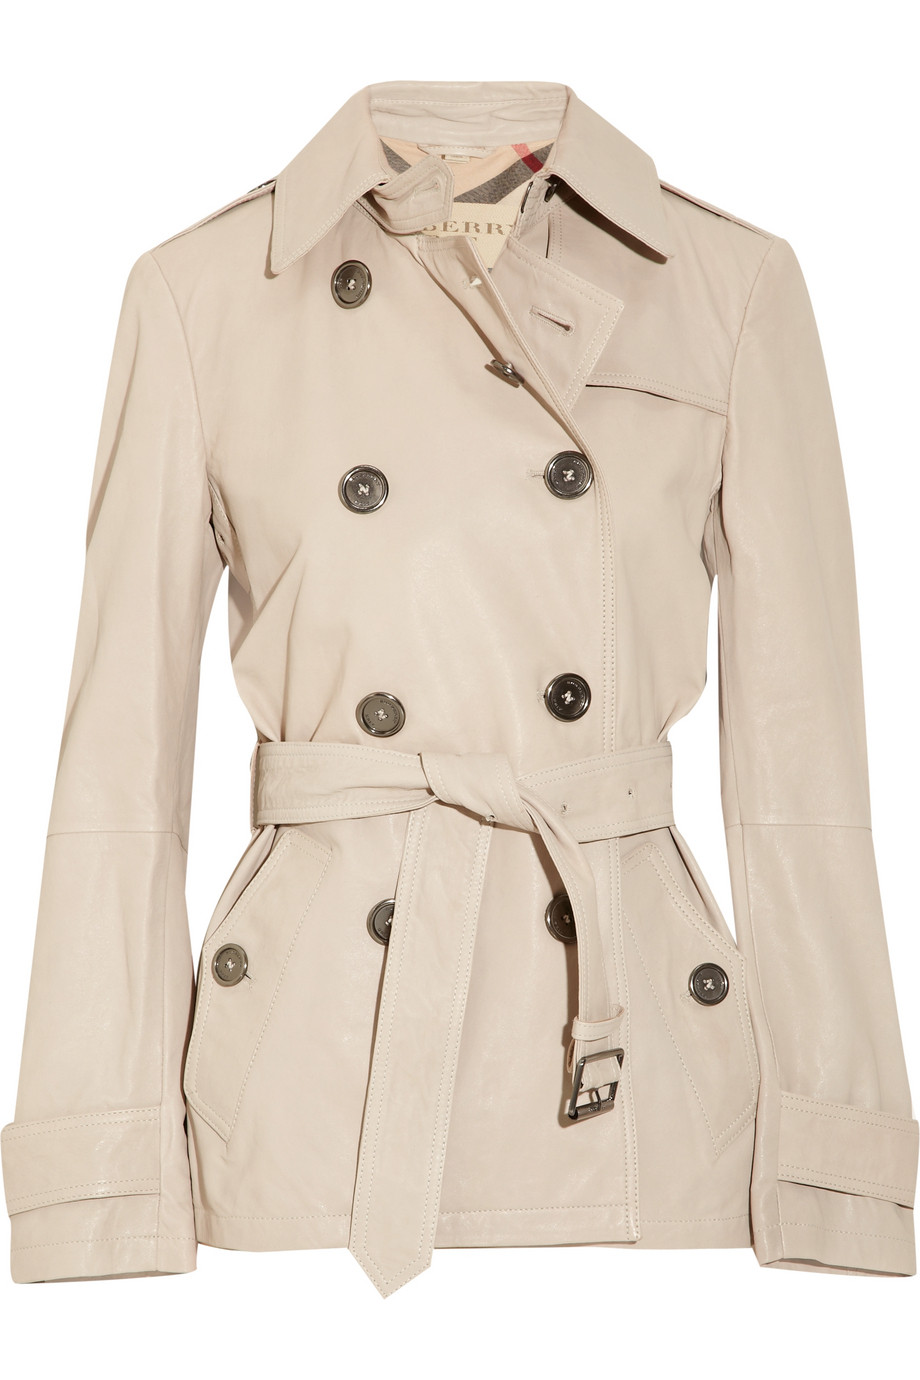 burberry brit women's trench coat